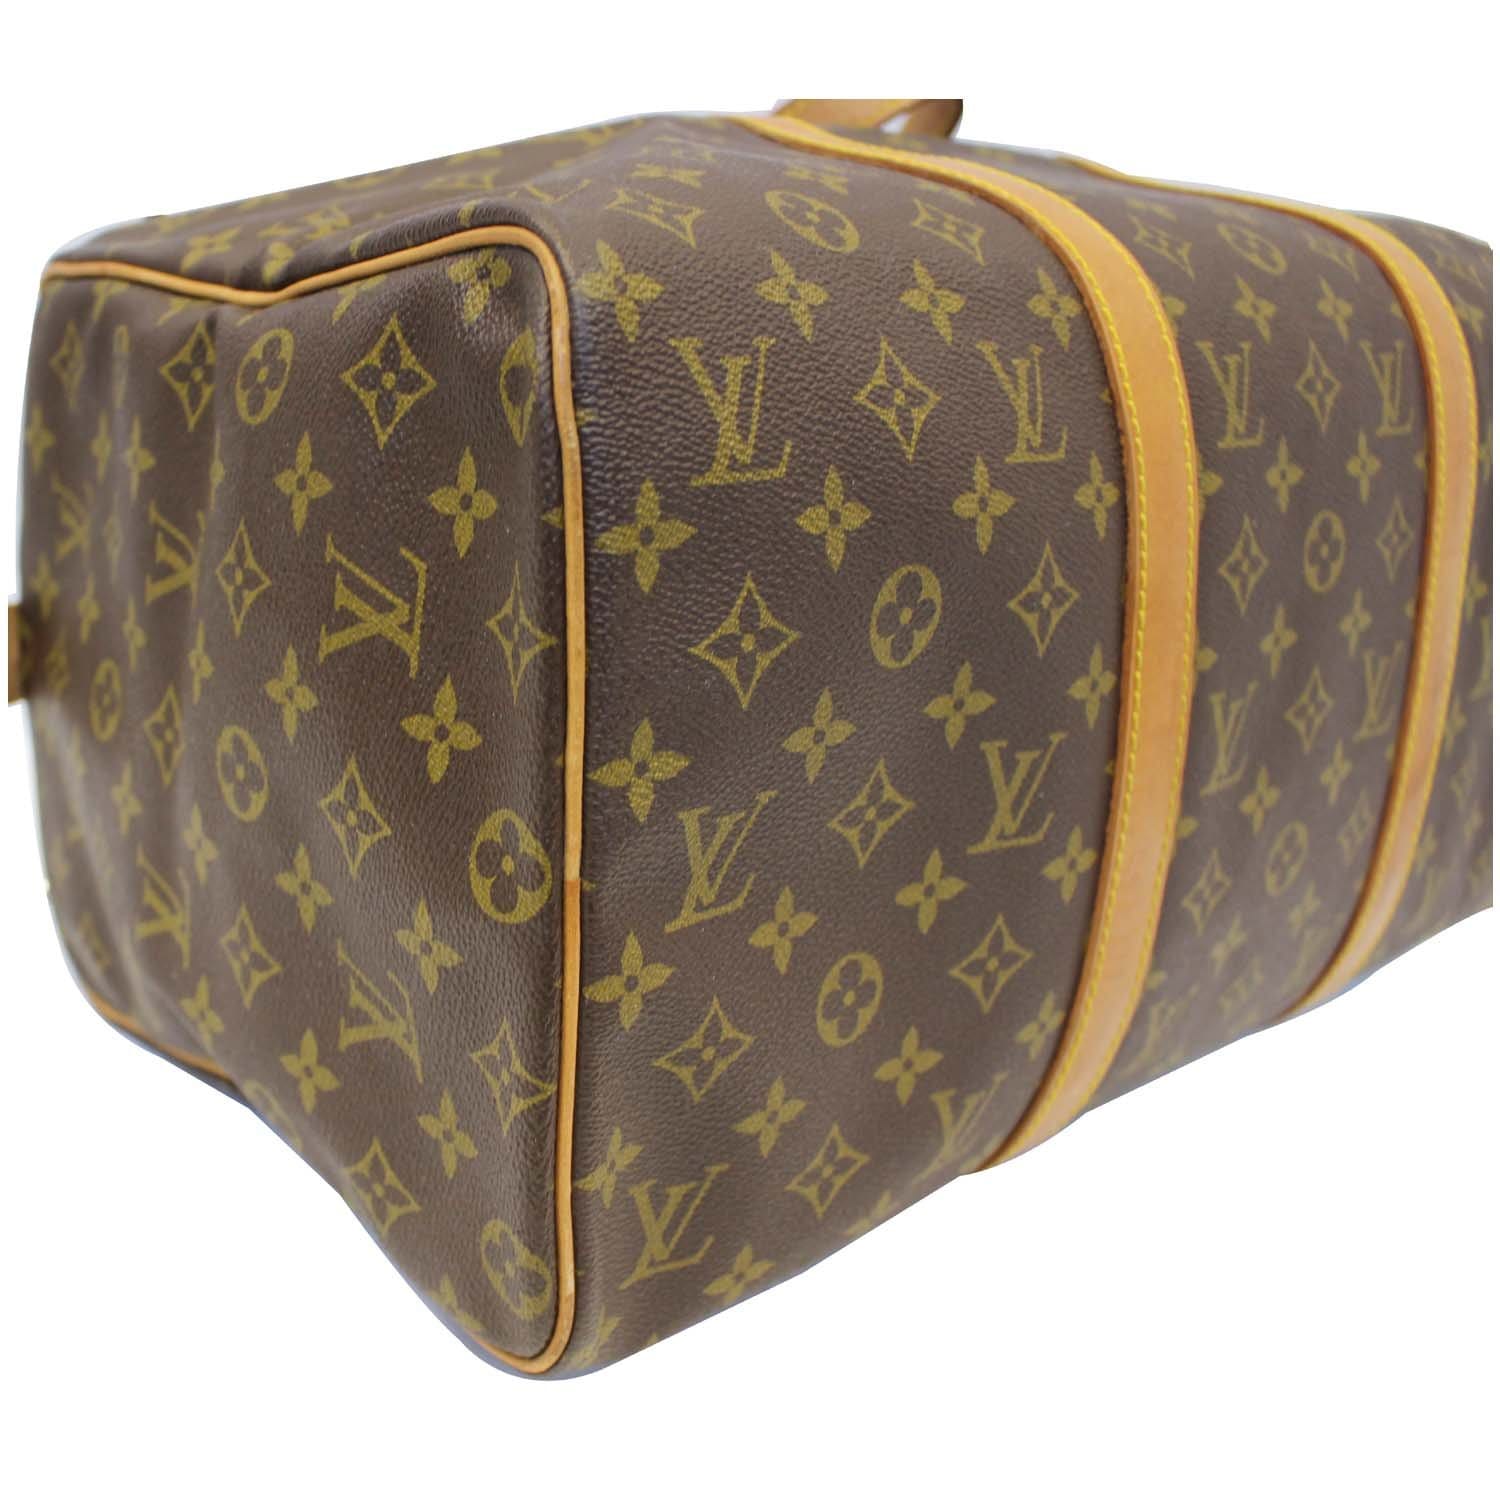 Louis Vuitton Sac Souple 45 Monogram Canvas Duffel Bag on SALE